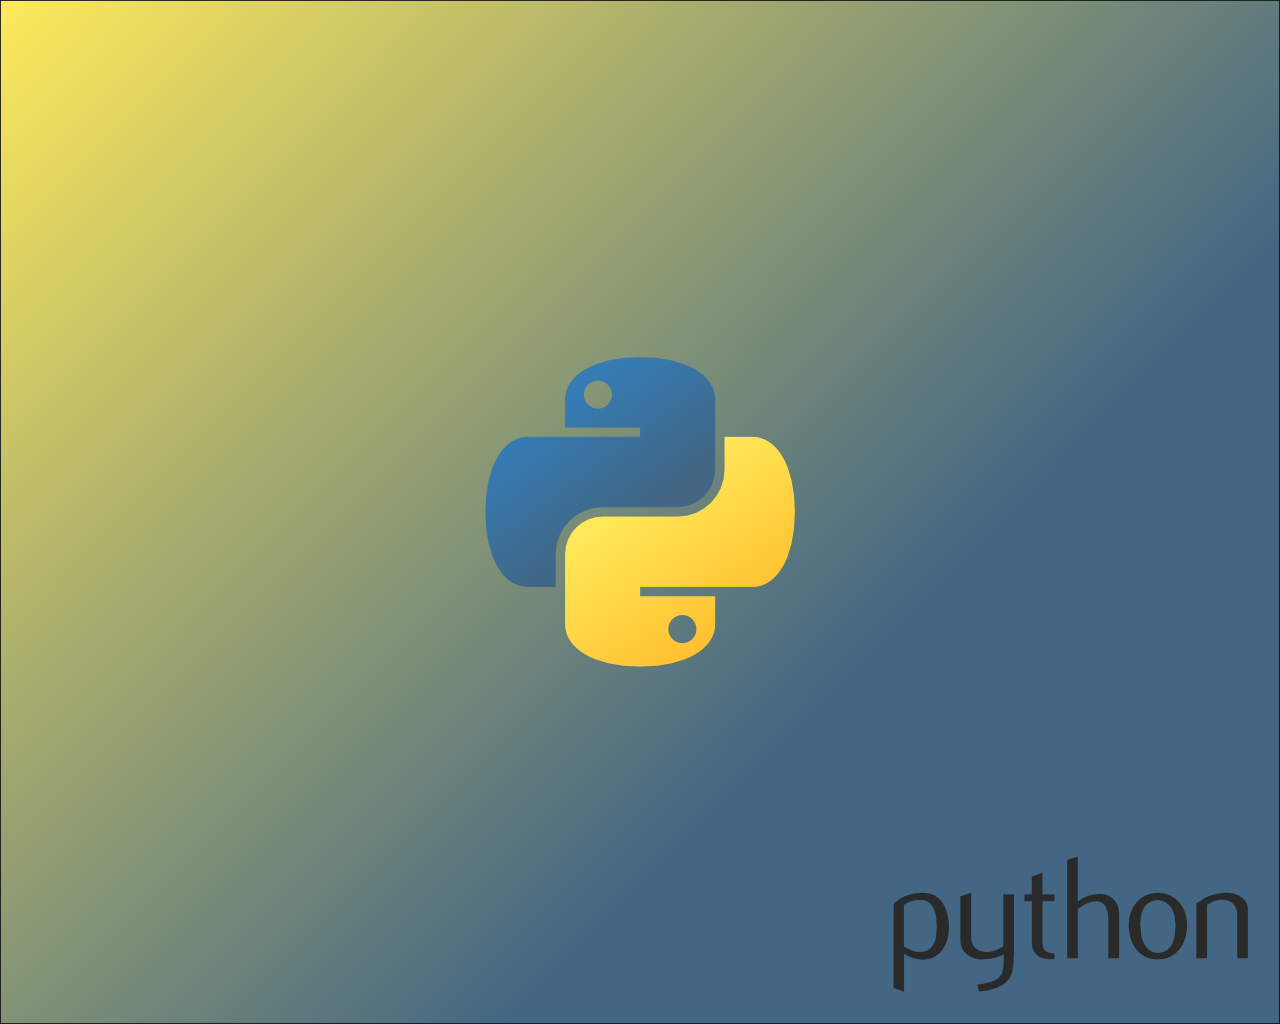 Python Wallpapers